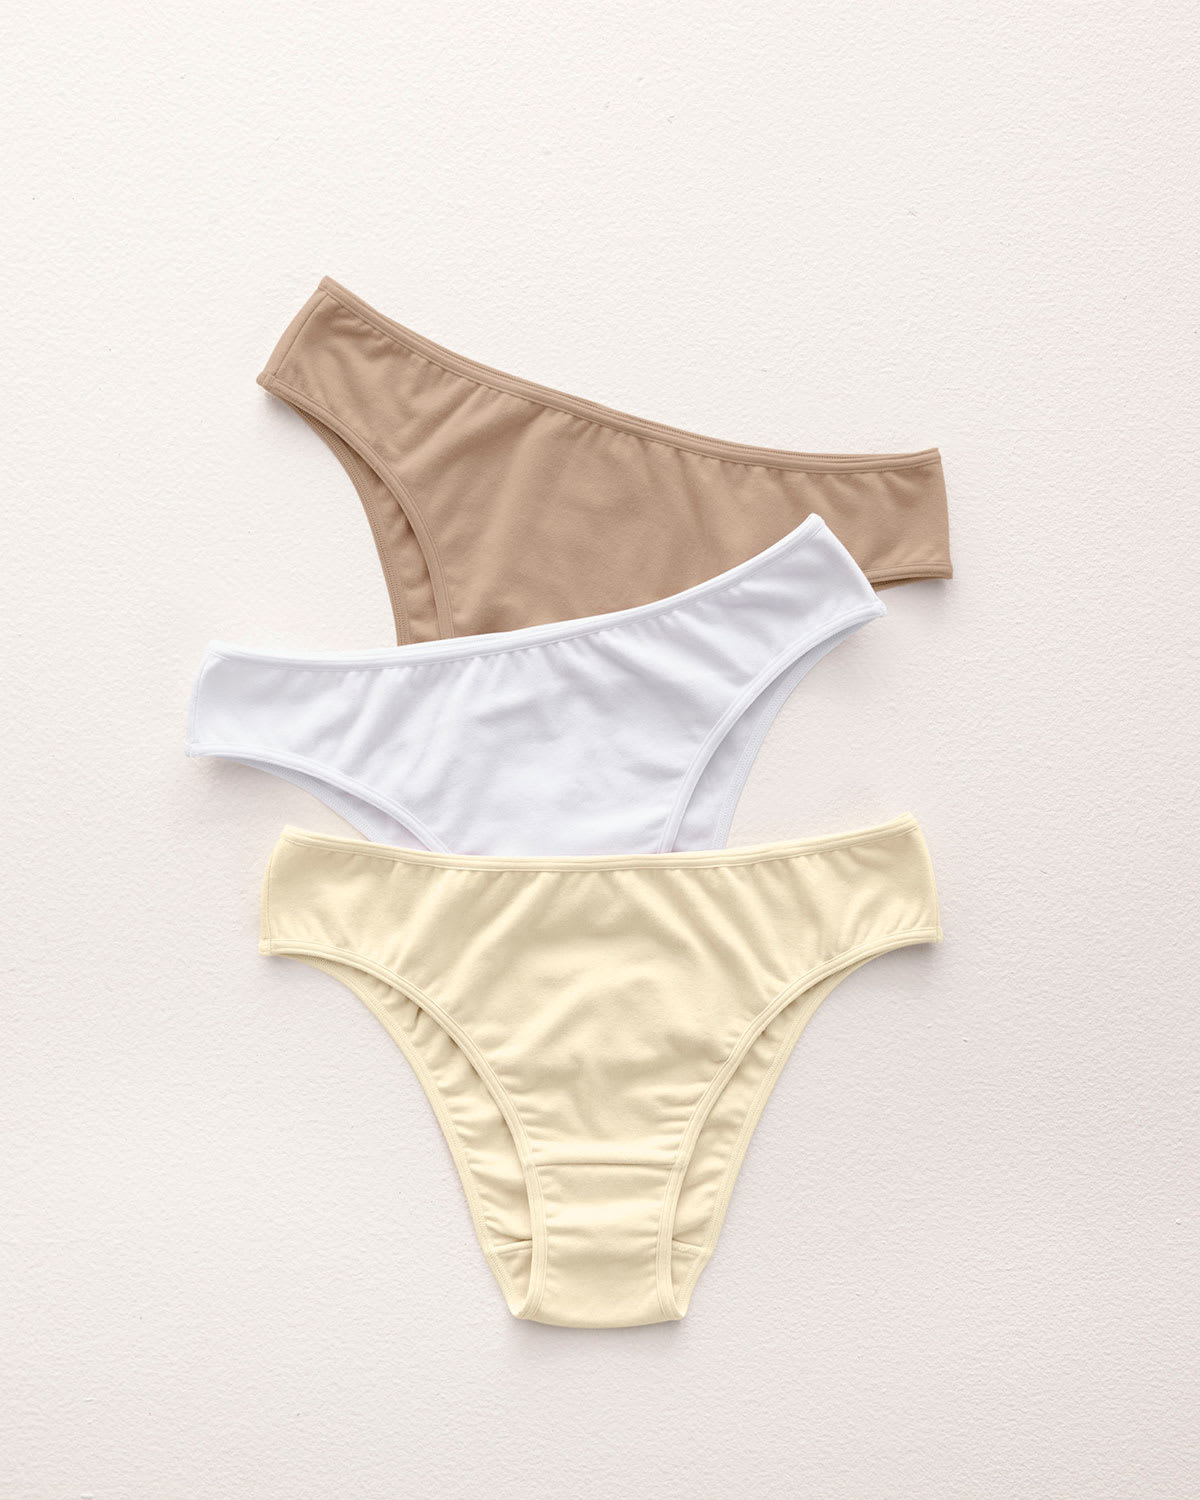 Women's Warner's Underwear - up to −47%